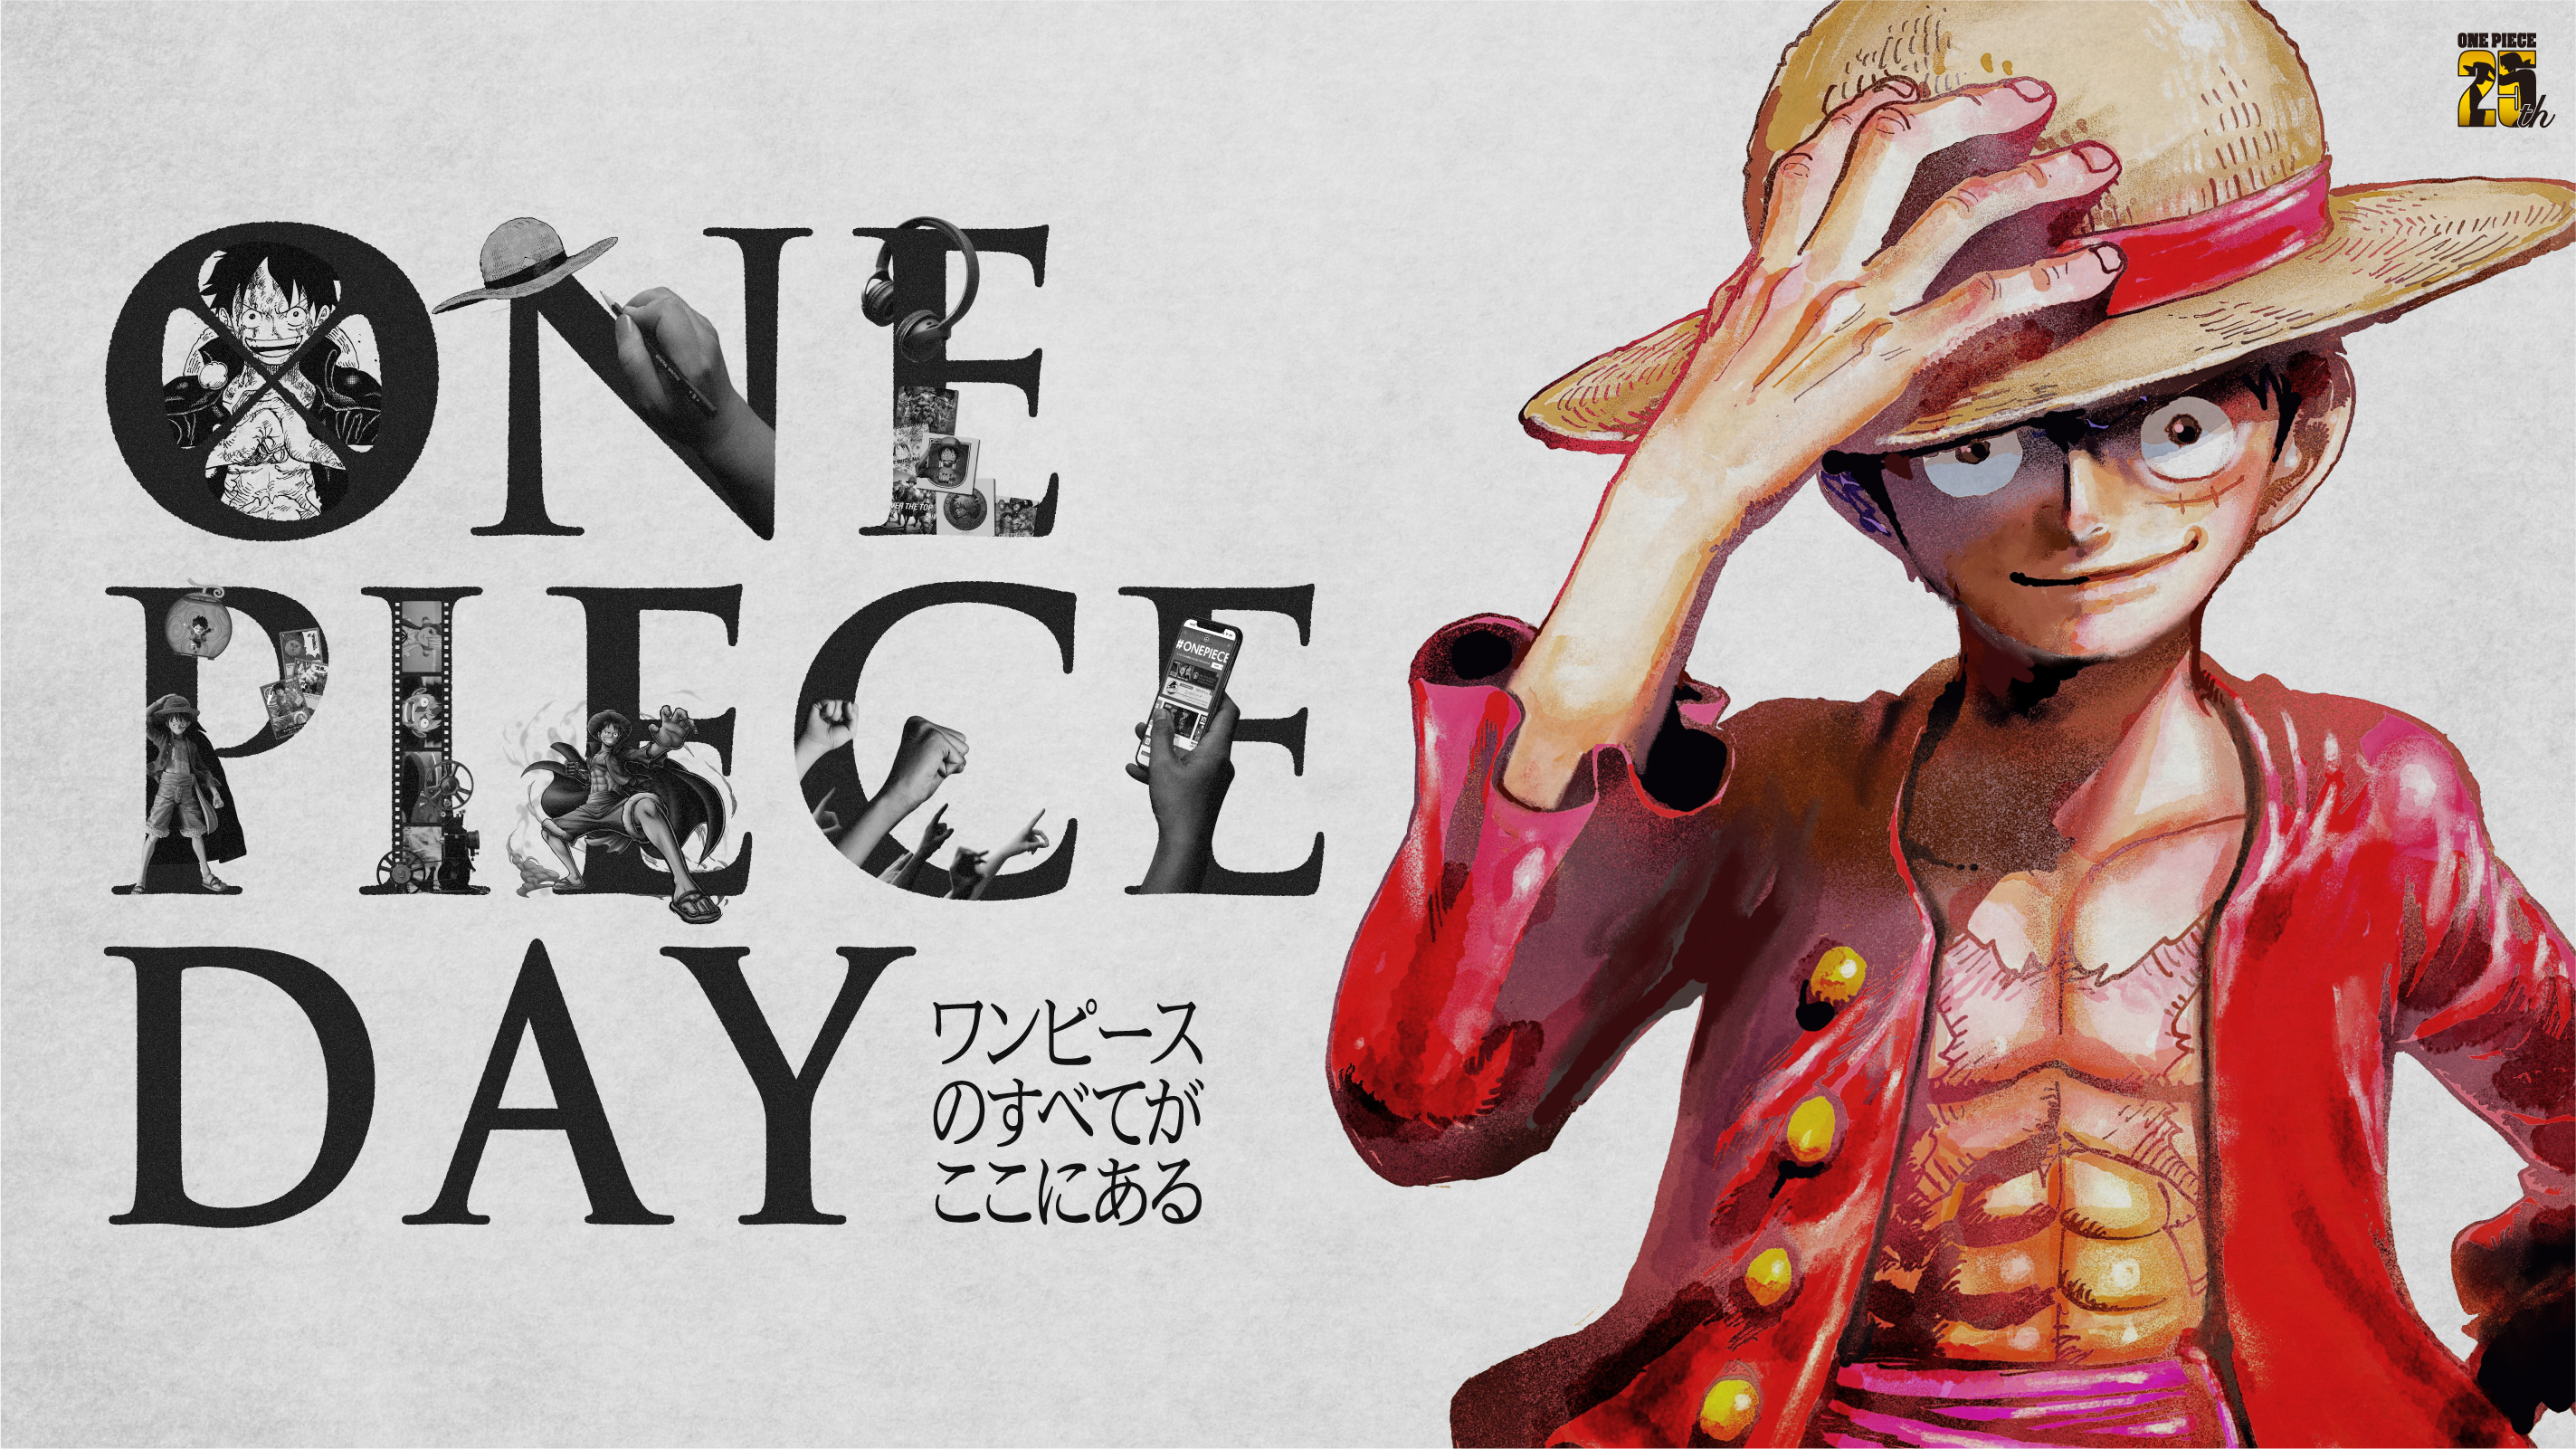 全ての One Piece ファンに捧ぐ祭典 世界同時配信番組 One Piece Day ワンピースのすべてがここにある 番組内容大公開 株式会社バンダイナムコエンターテインメントのプレスリリース